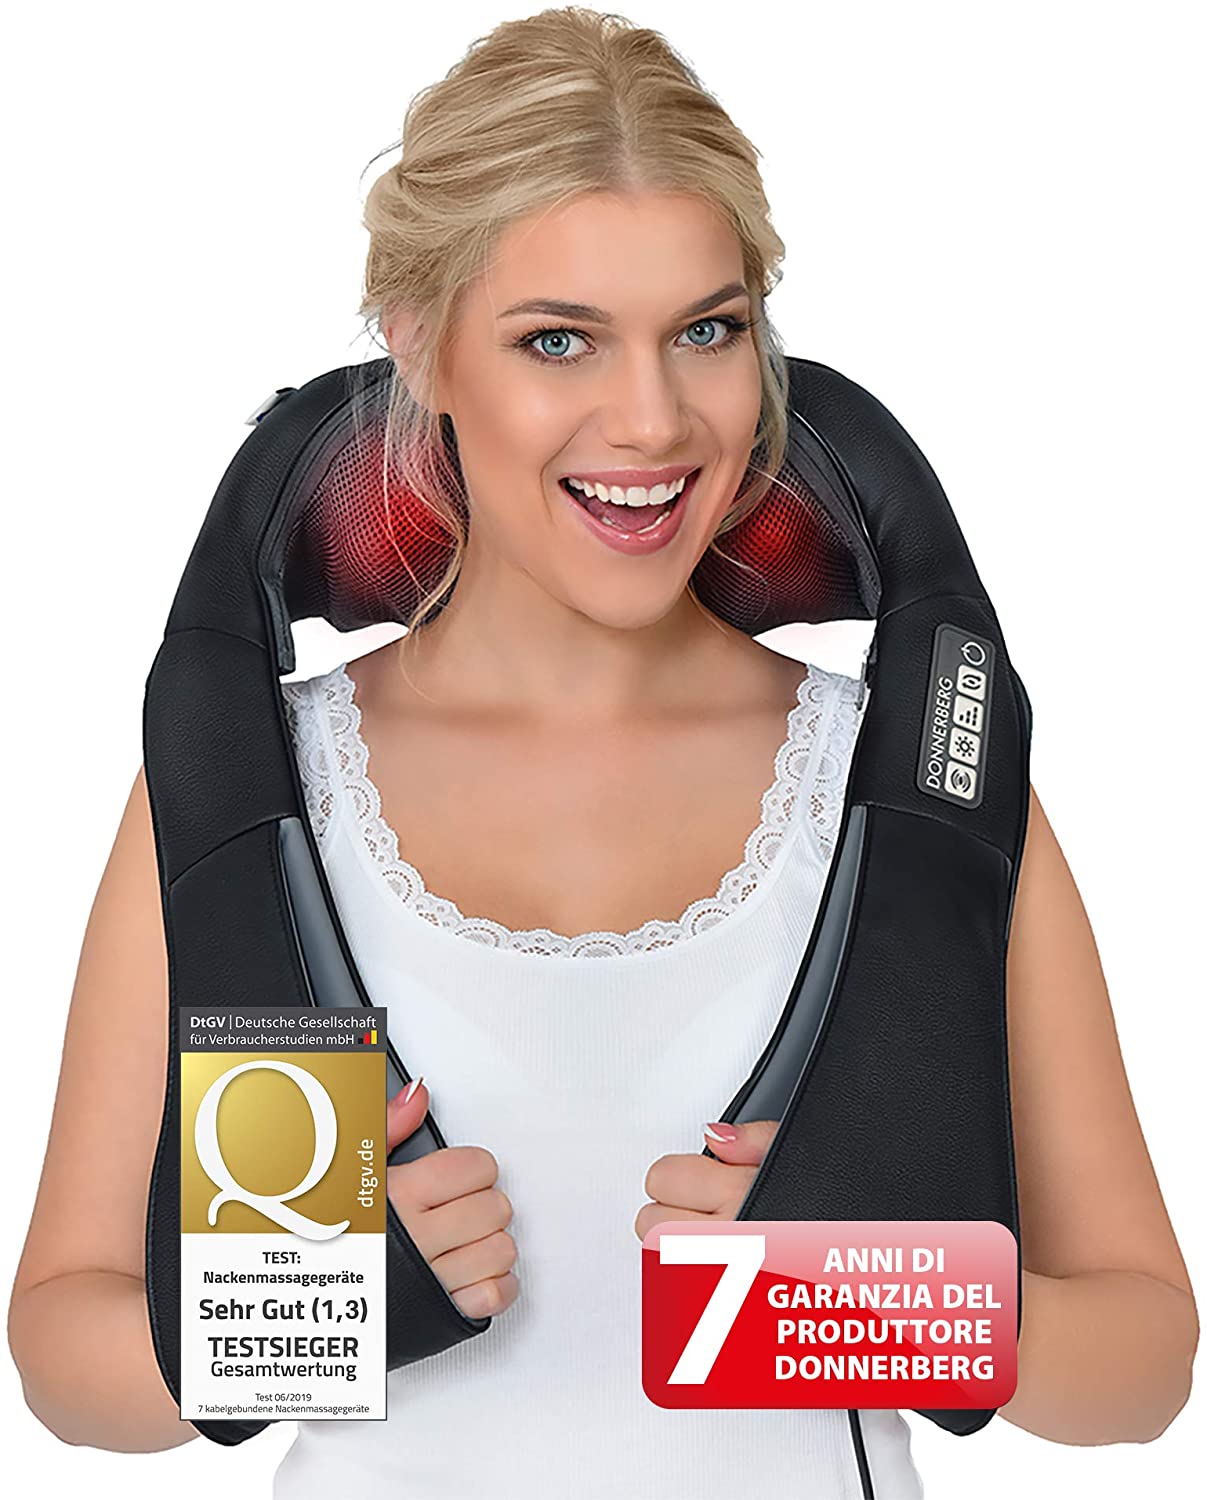 Beauty ZQ Nuovo Intelligente Cervicale Massaggiatore Multi-Funzione USB Elettrico Spalla Collo Mini Strumento di Massaggio Perdita di Peso Corporeo Modellatura Regalo Adesivi Massaggio,Red 